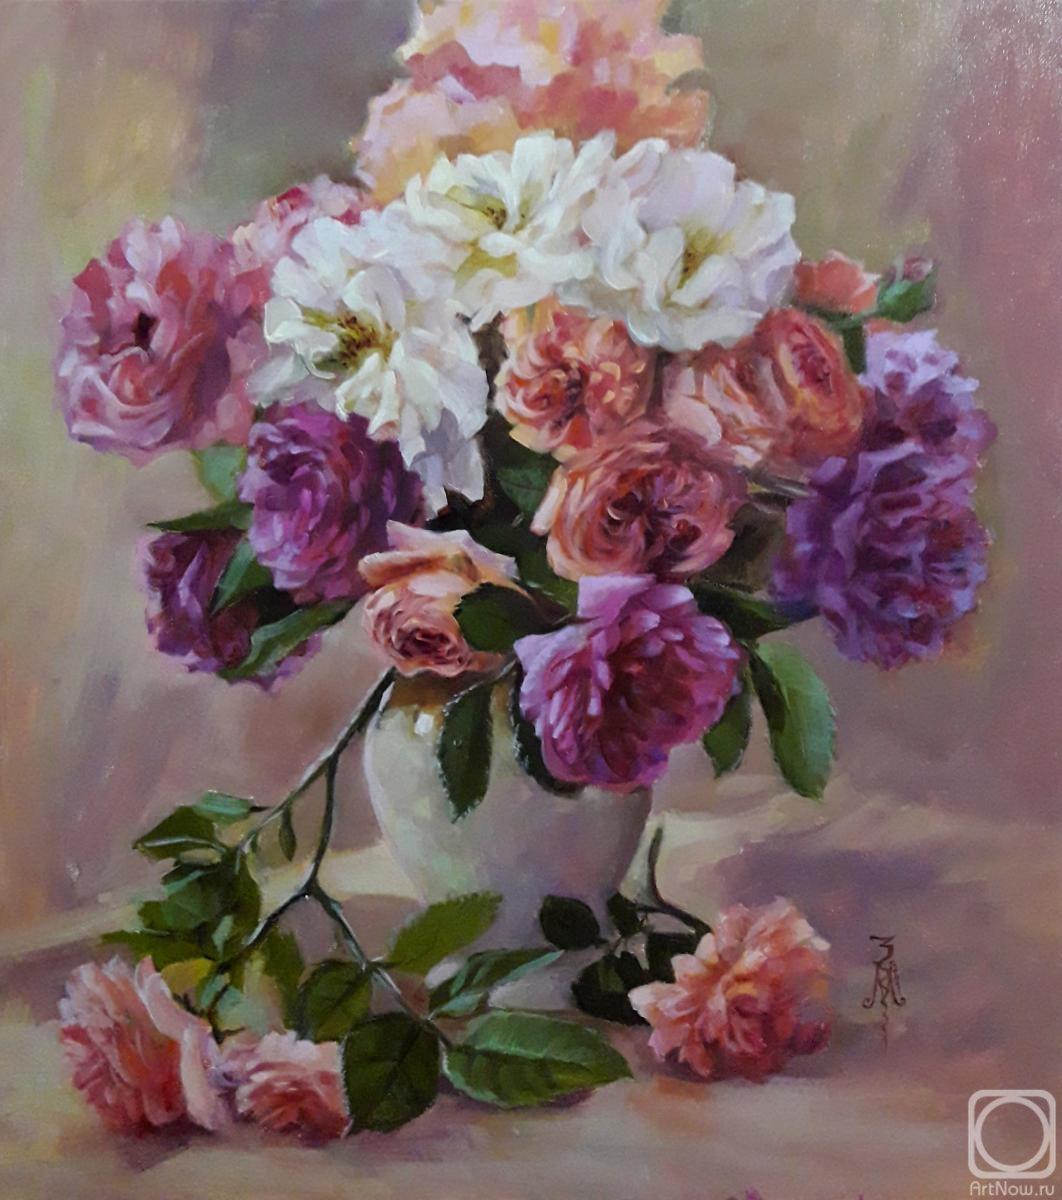 Zlobina Marina. "Roses for happy"